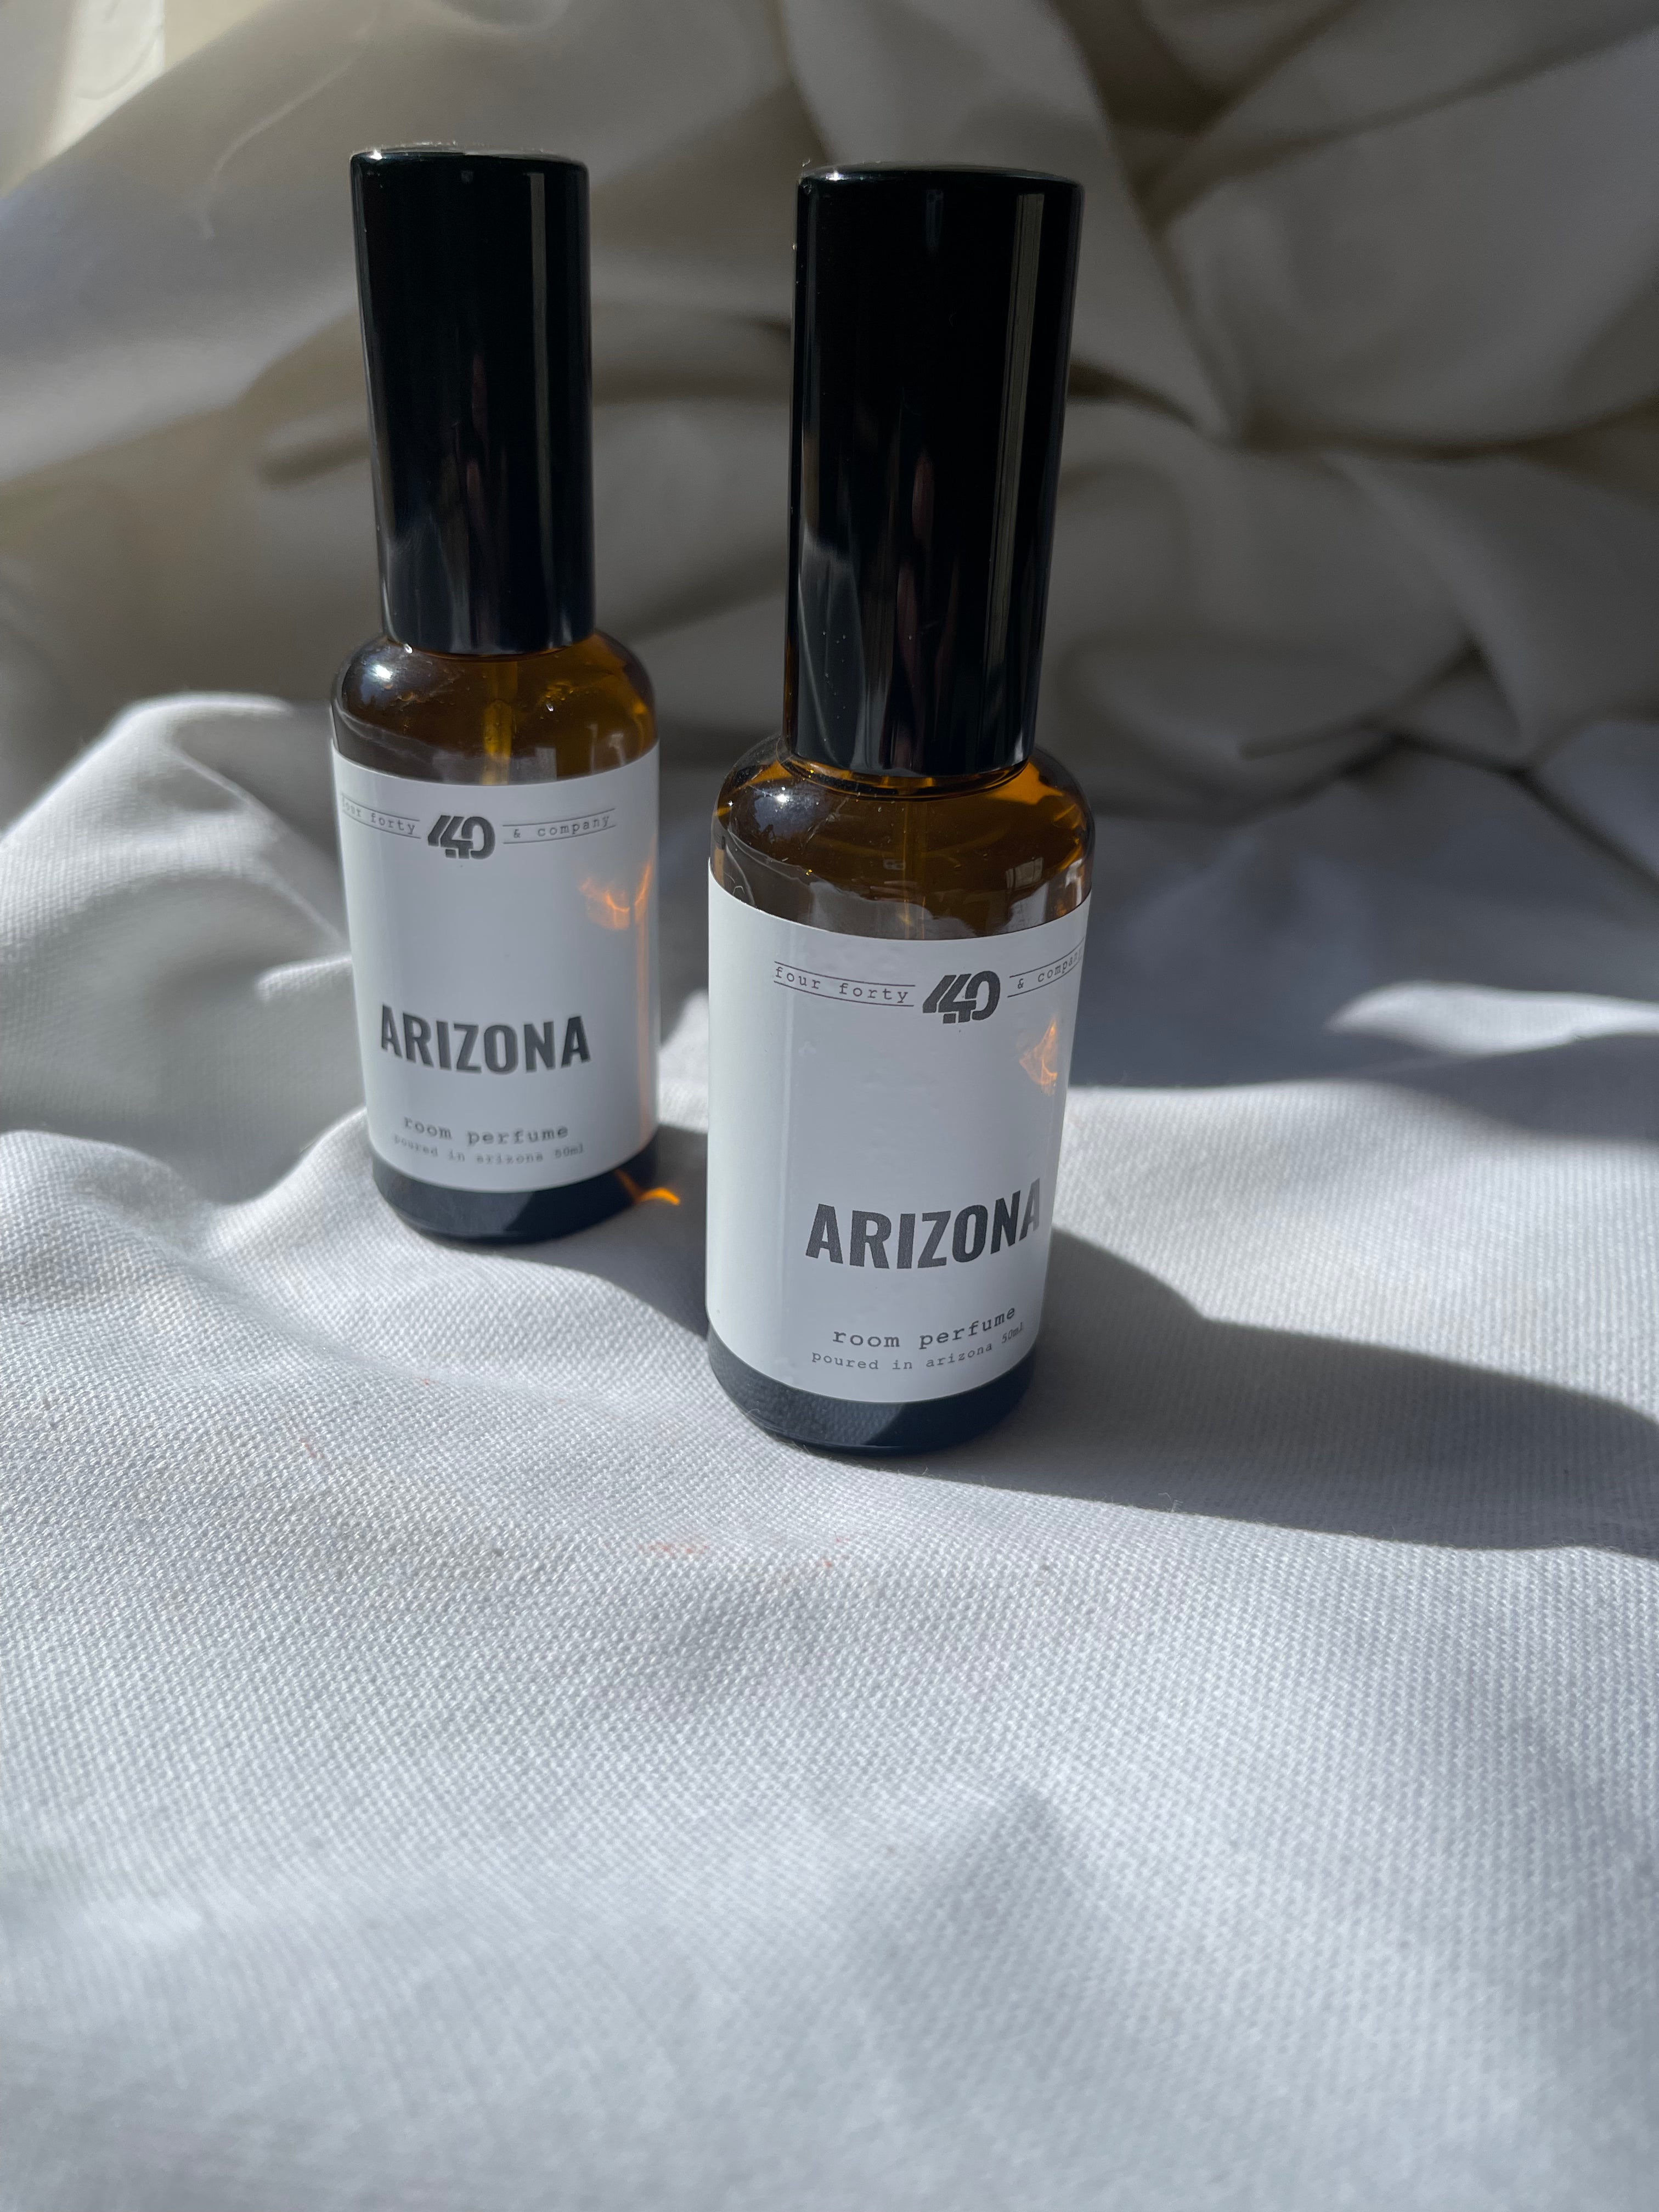 arizona room perfume